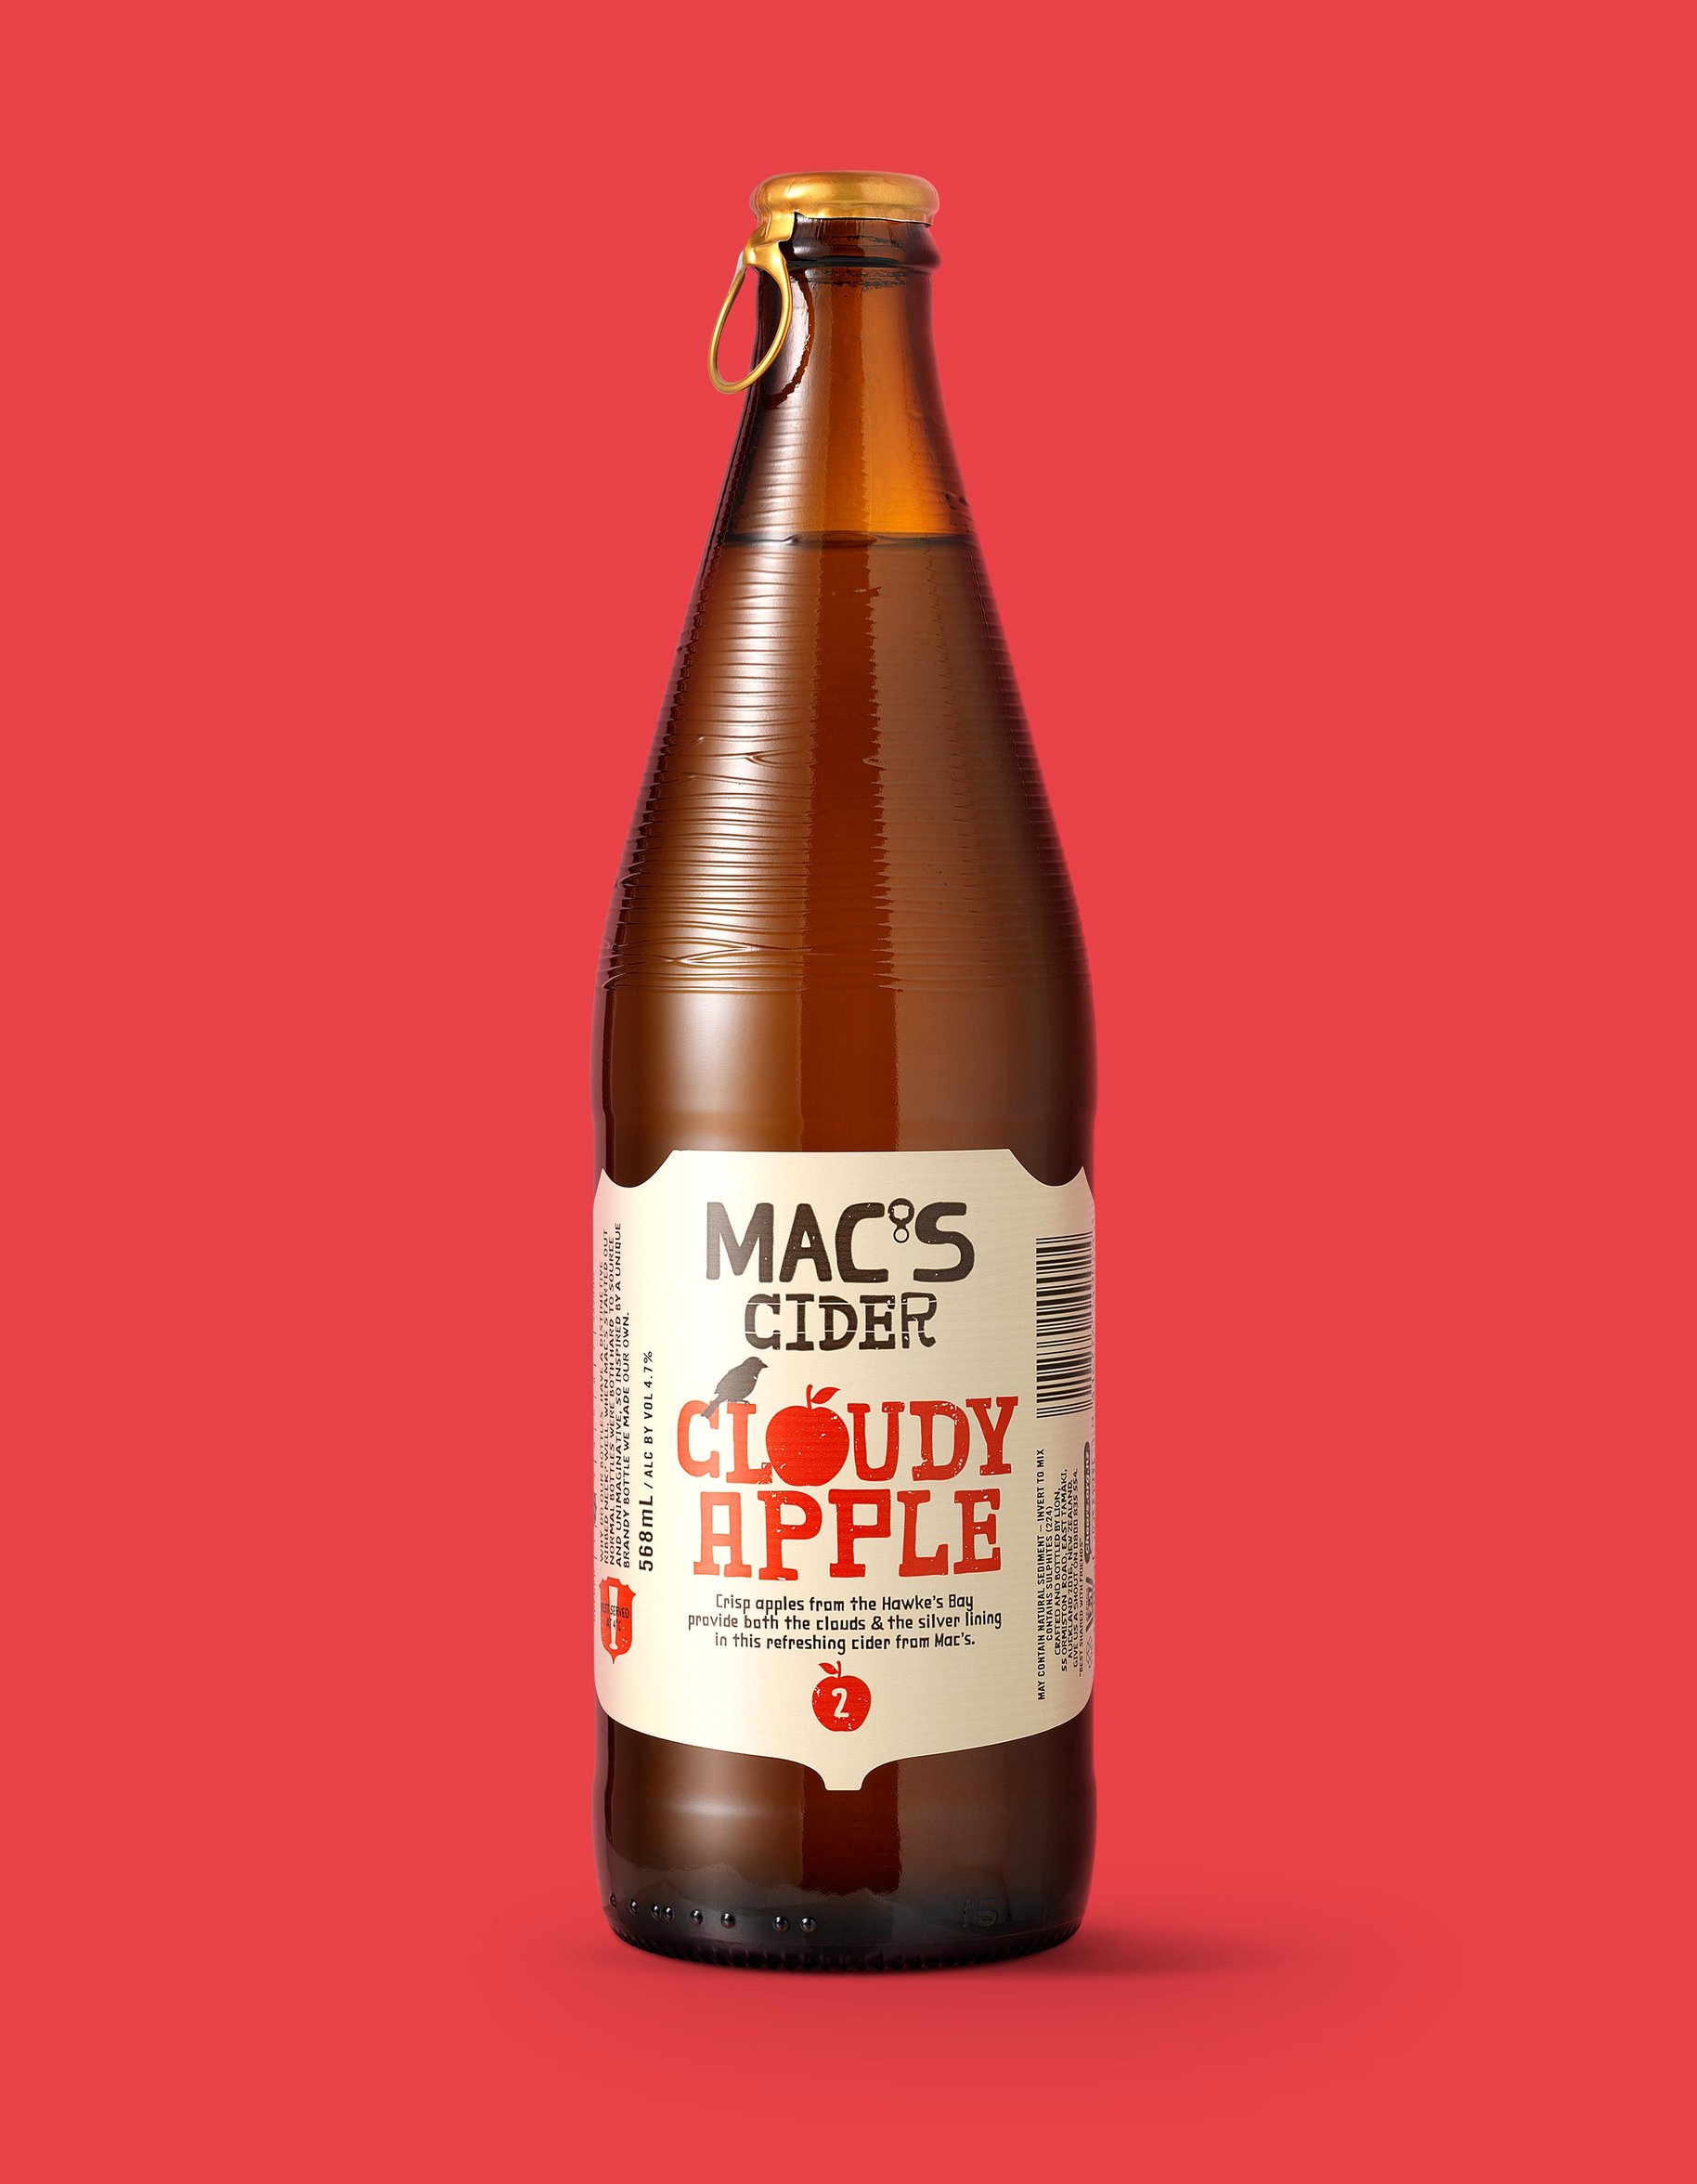 Macs Beer cloudy apple cider packaging